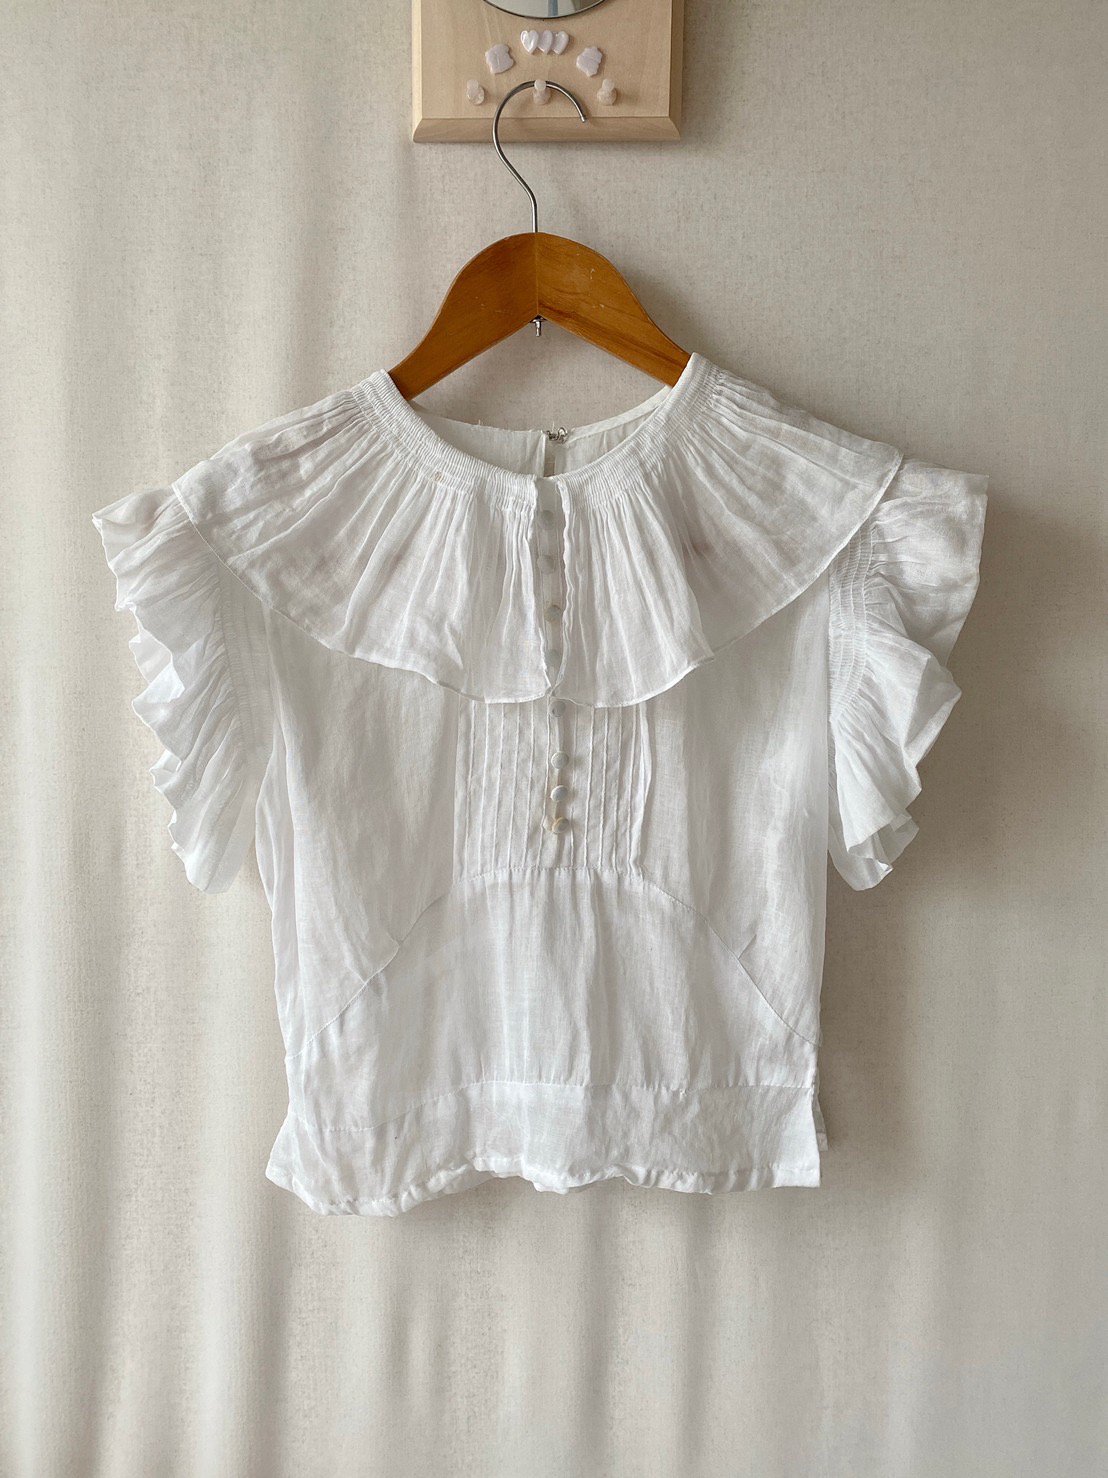 Antique cotton blouse